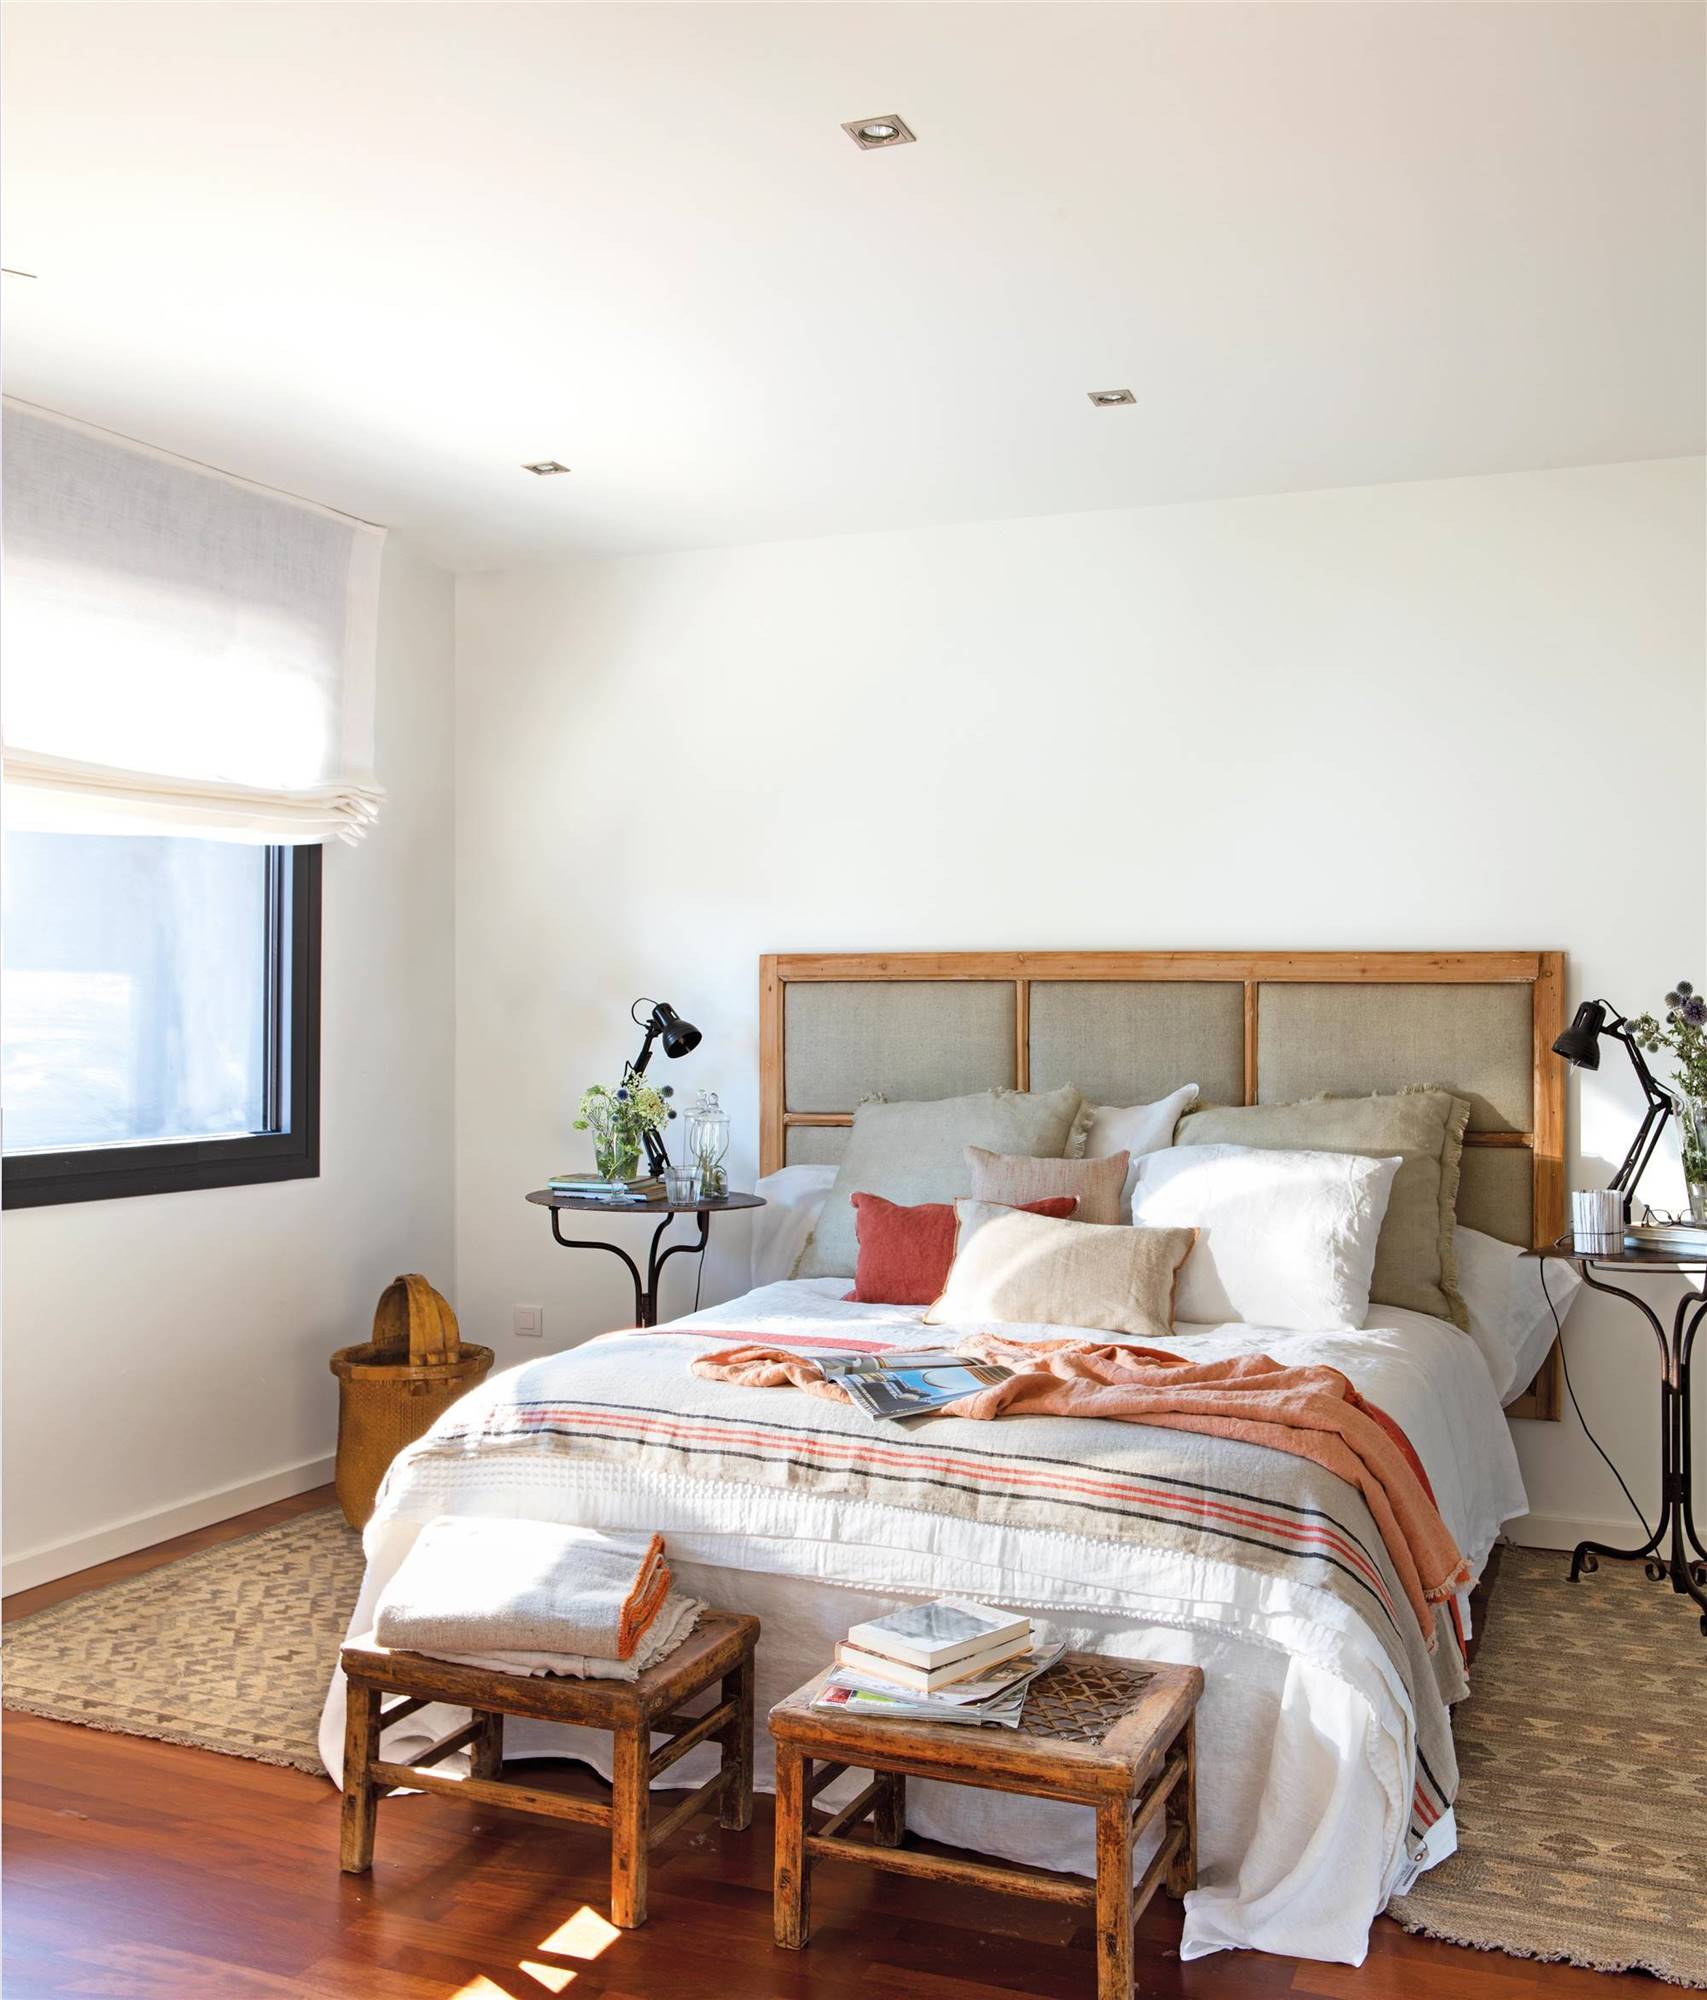 Dormitorio con banquetas, alfombras y cabecero realizado con una antigua puerta de cuarterones.